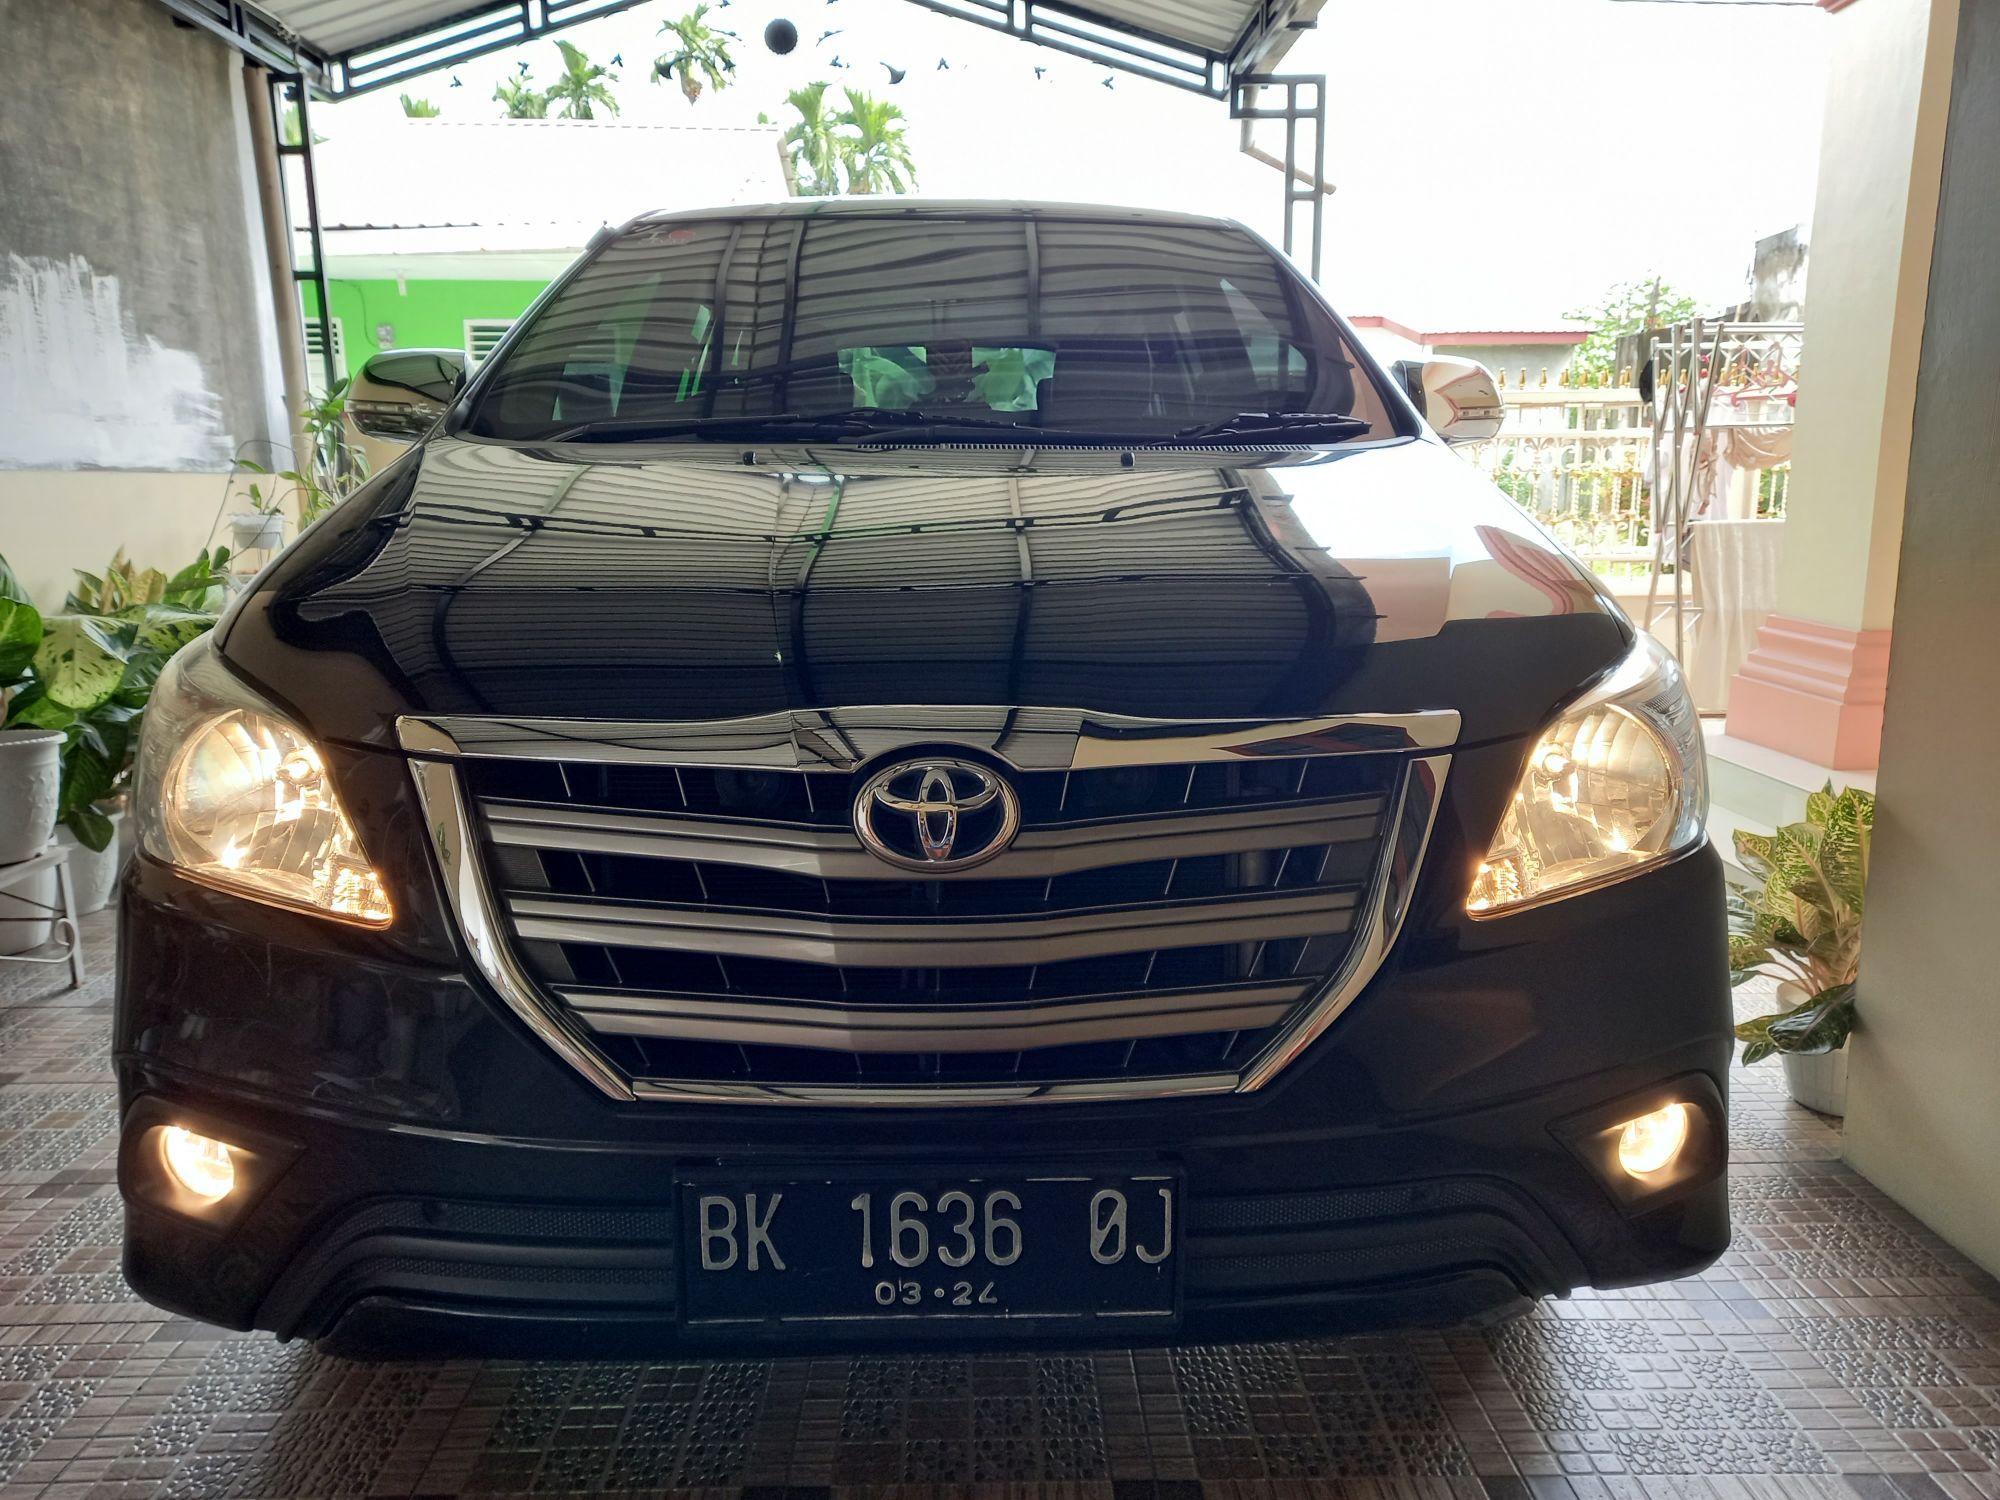 2014 Toyota Kijang Innova 2.5 G MT DIESEL 2.5 G MT DIESEL bekas